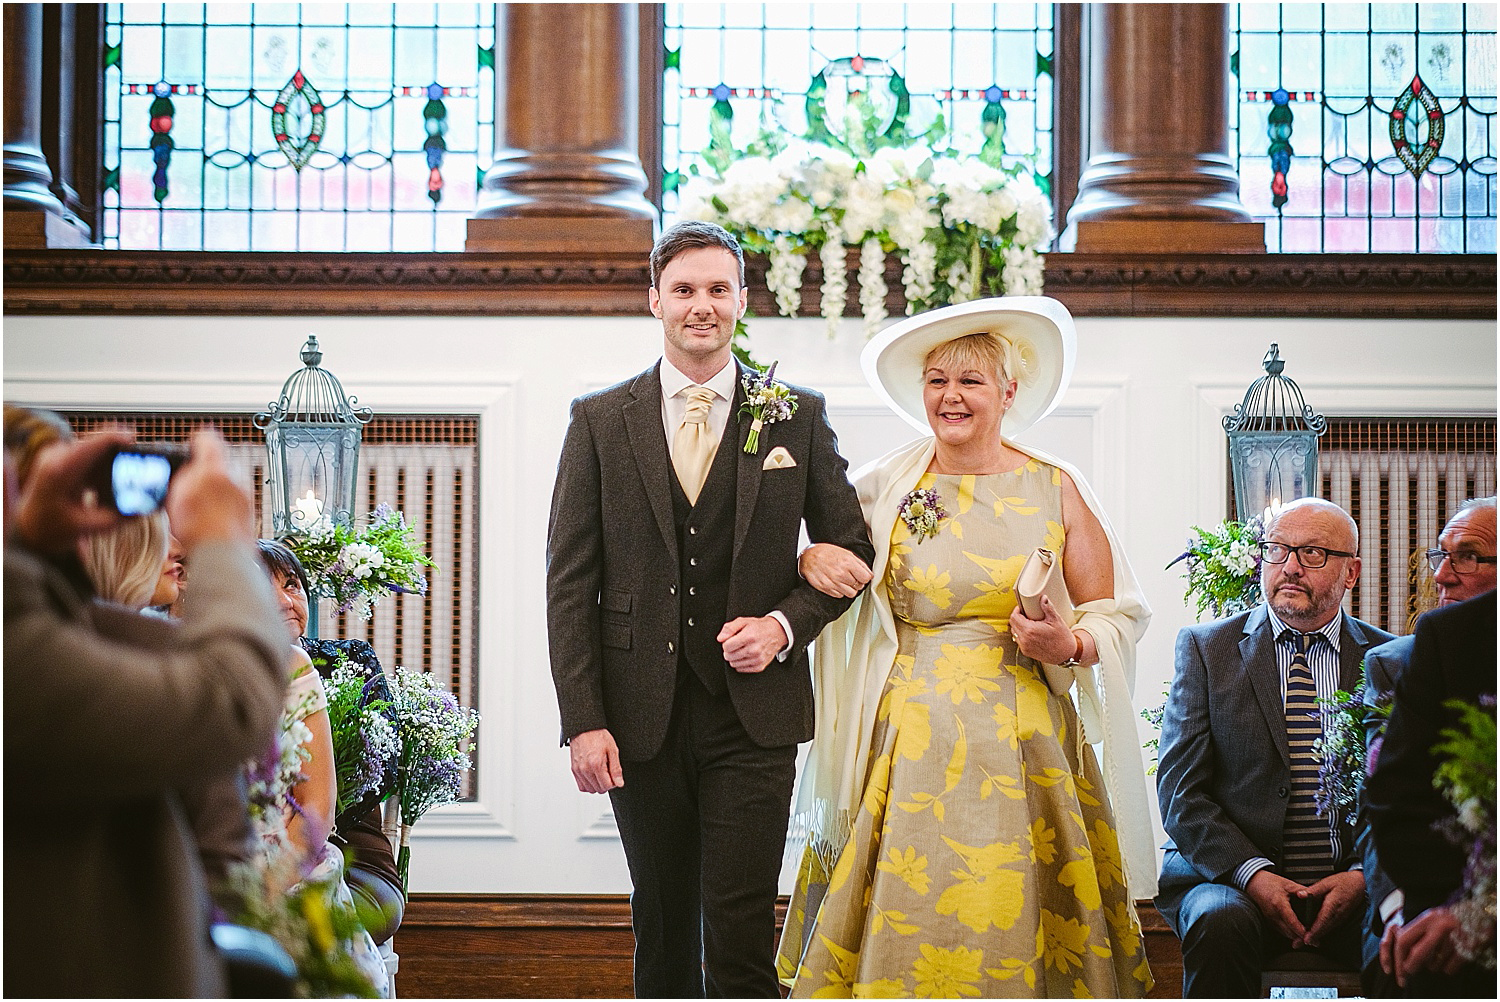 Beamish Hall wedding photography - Laura and Richard_0029.jpg